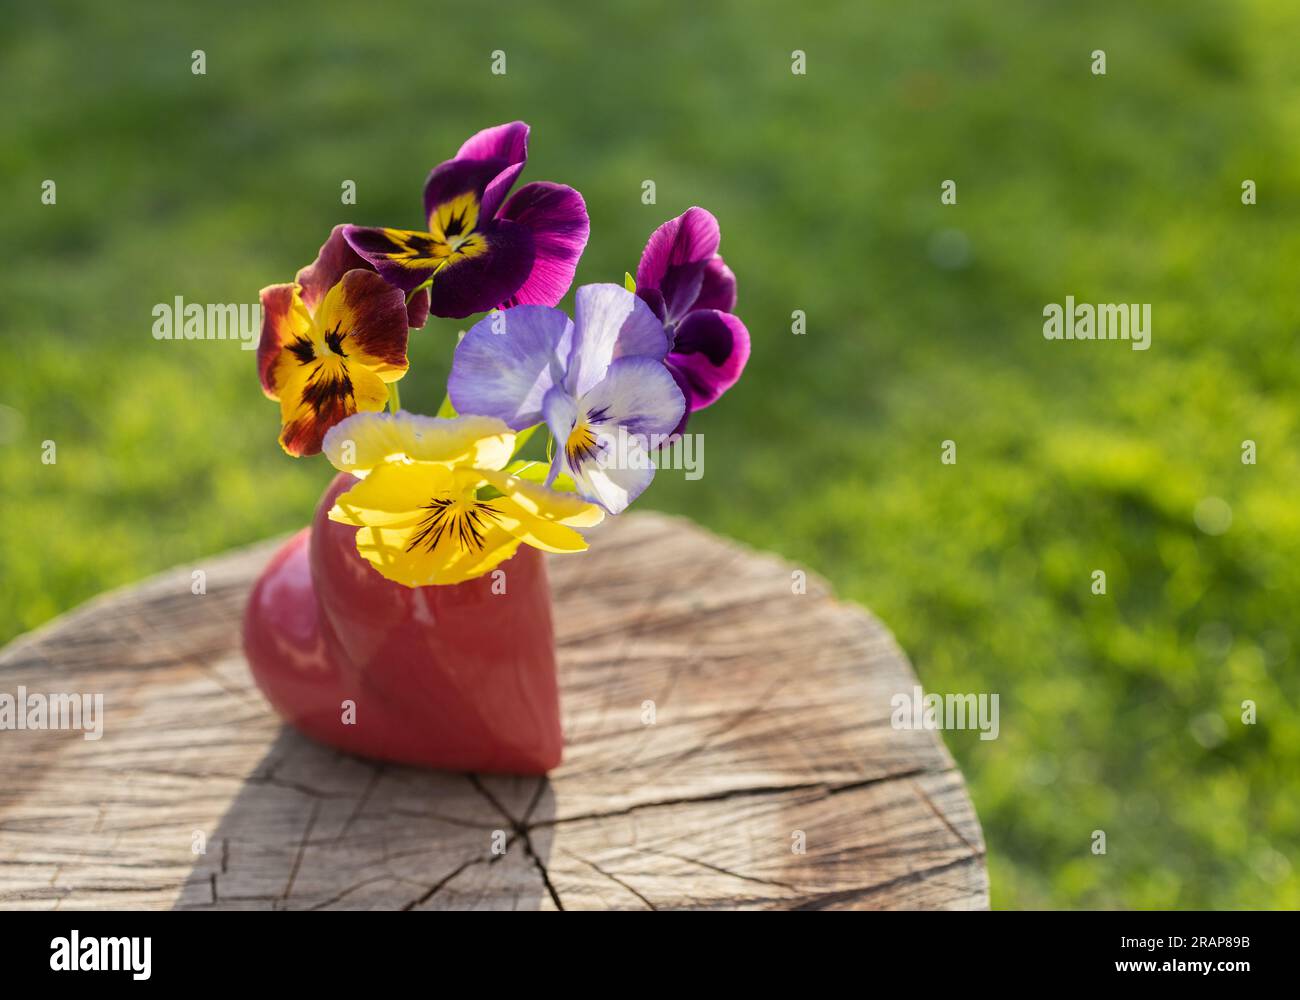 vase en forme de coeur avec des culottes colorées se dresse sur une souche par une journée ensoleillée. cadeau de fleur. le concept de romance, d'amour et de sentiments tendres. mo Banque D'Images